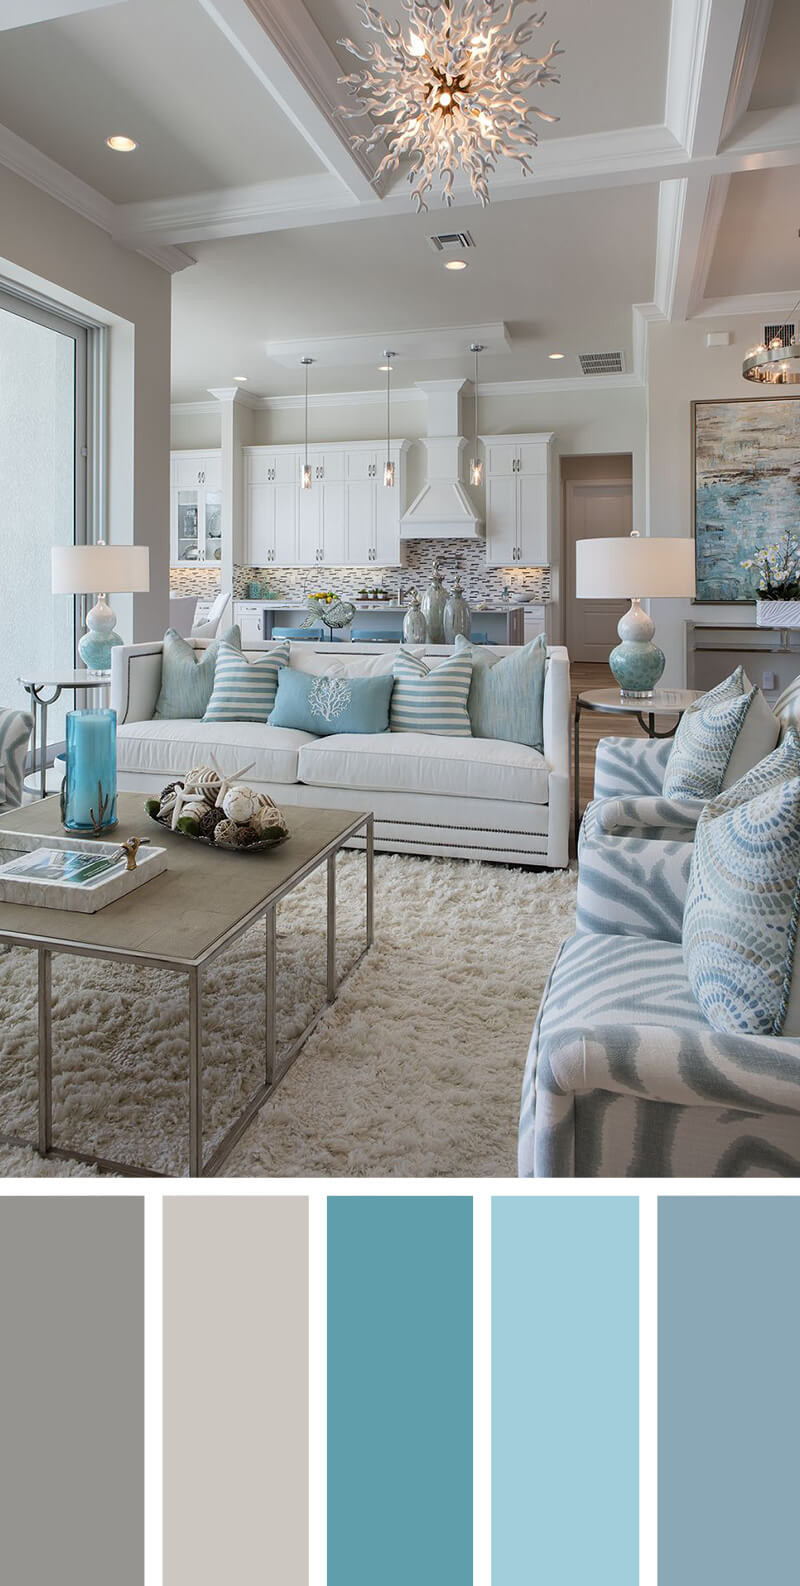 Living Room Paint Color Idea
 21 Cozy Living Room Paint Colors Ideas for 2019